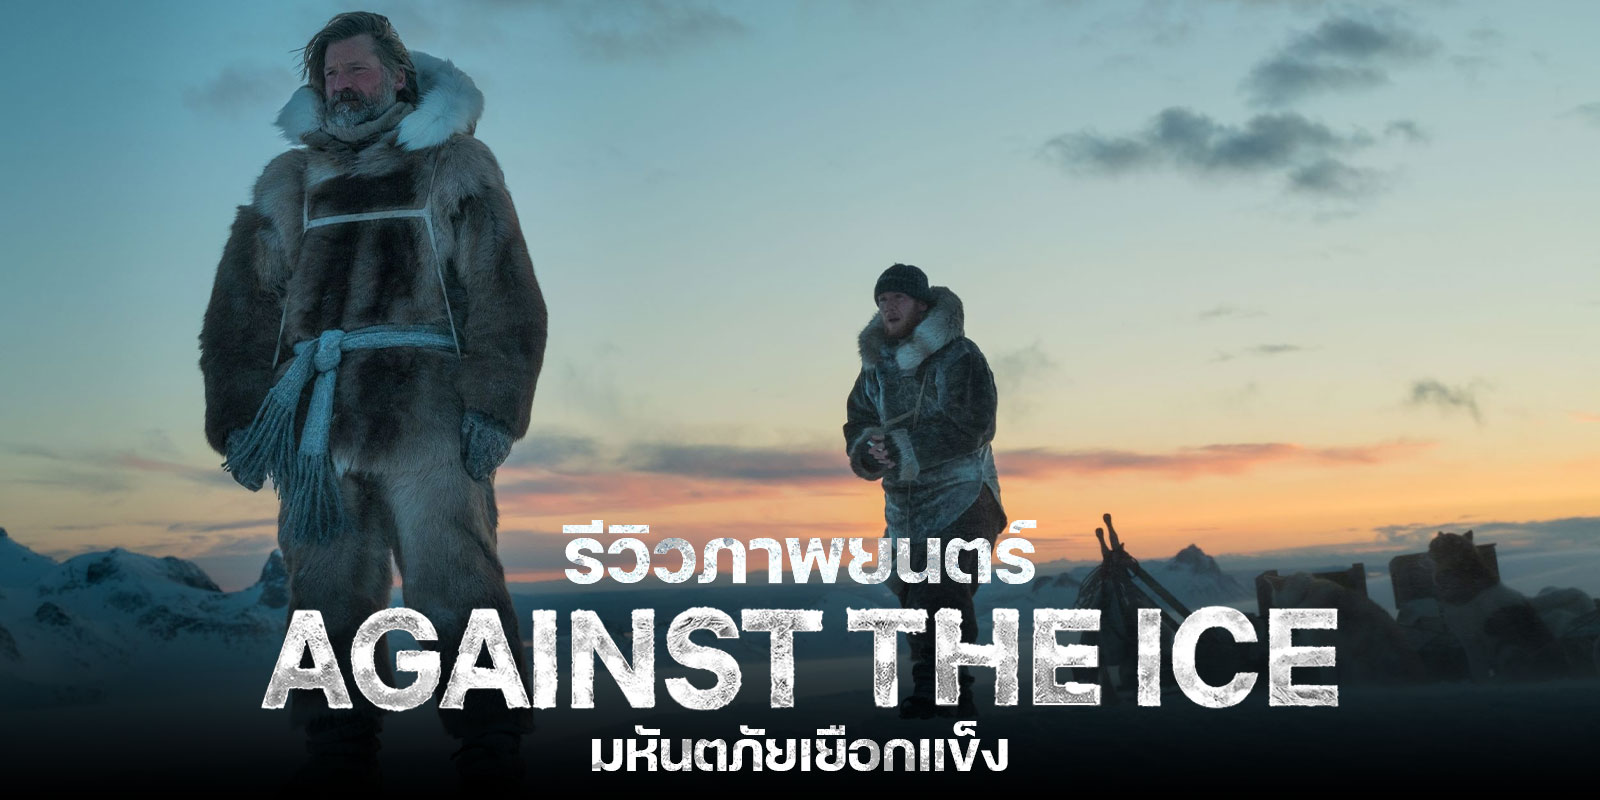 รีวิว Against The Ice มหันตภัยเยือกแข็ง หนังสร้างจากเรื่องจริงของนักสำรวจขั้วโลก